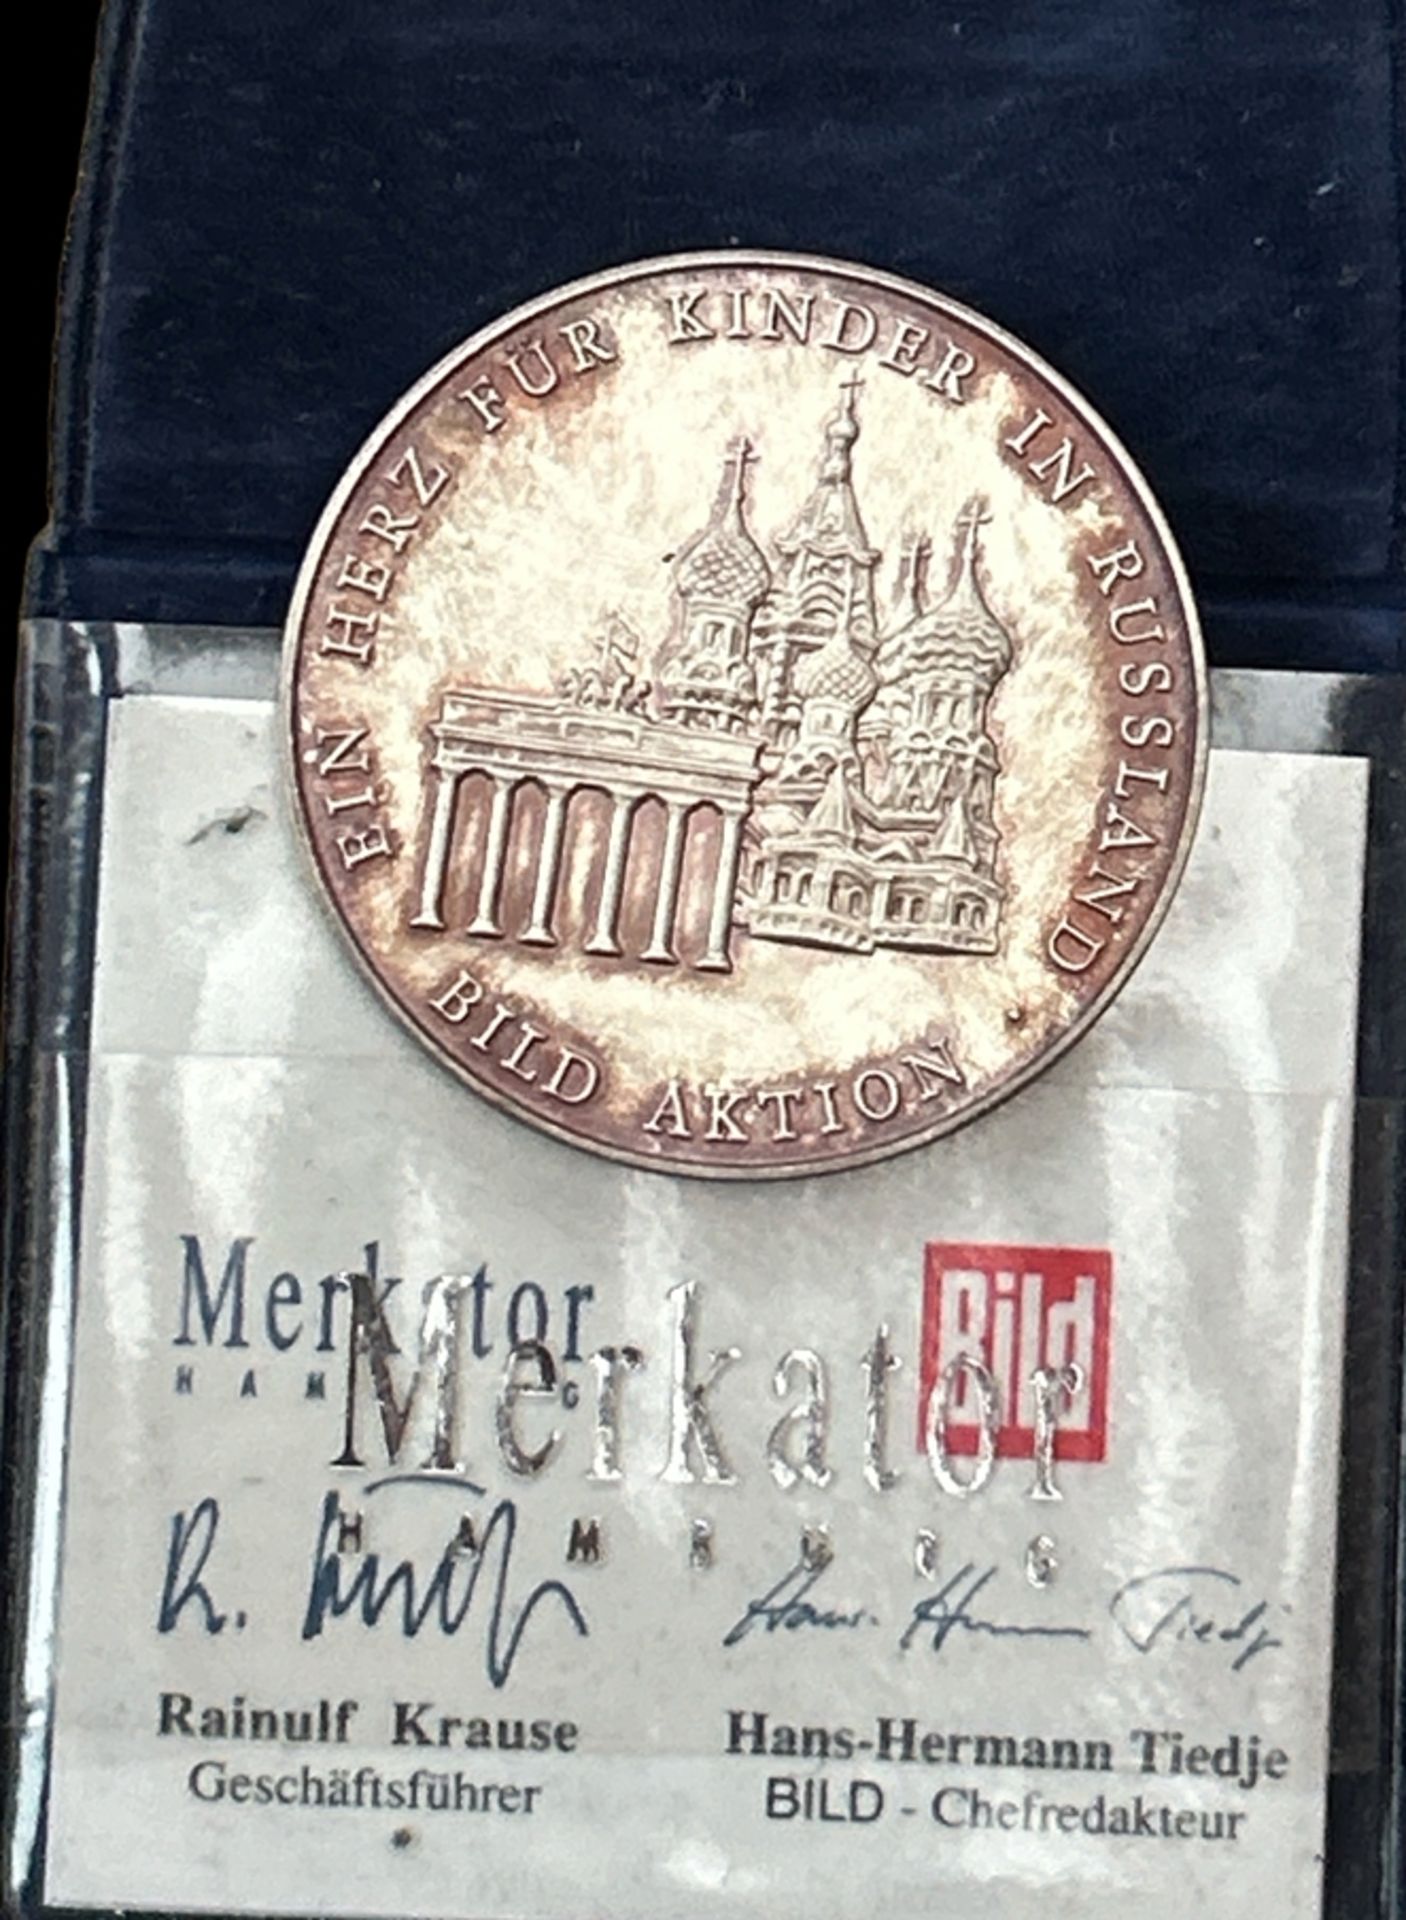 Silber-Medaille "Ein Herz für Kinder in Russland" Bild-Aktion 1991, mit Zertifikat, 38,10 gr., stem